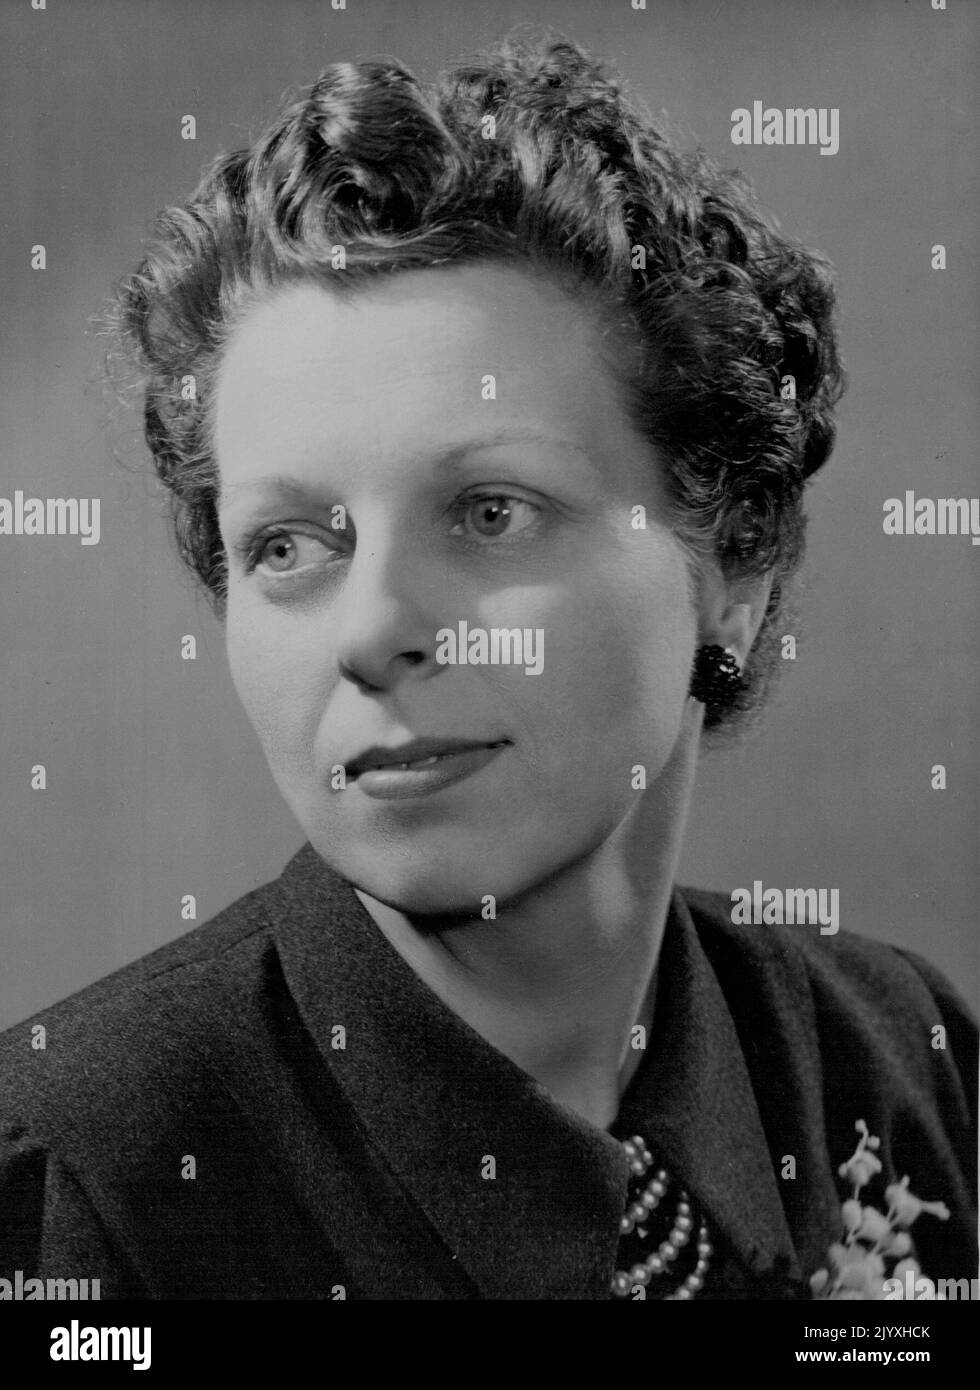 Frau Doreen Stephens, die seit dem 26.. Oktober 1953 zur Redakteurin für Frauenprogramme im BBC Television Service ernannt wurde. 13. Oktober 1953. (Foto vom BBC Television Service). Stockfoto